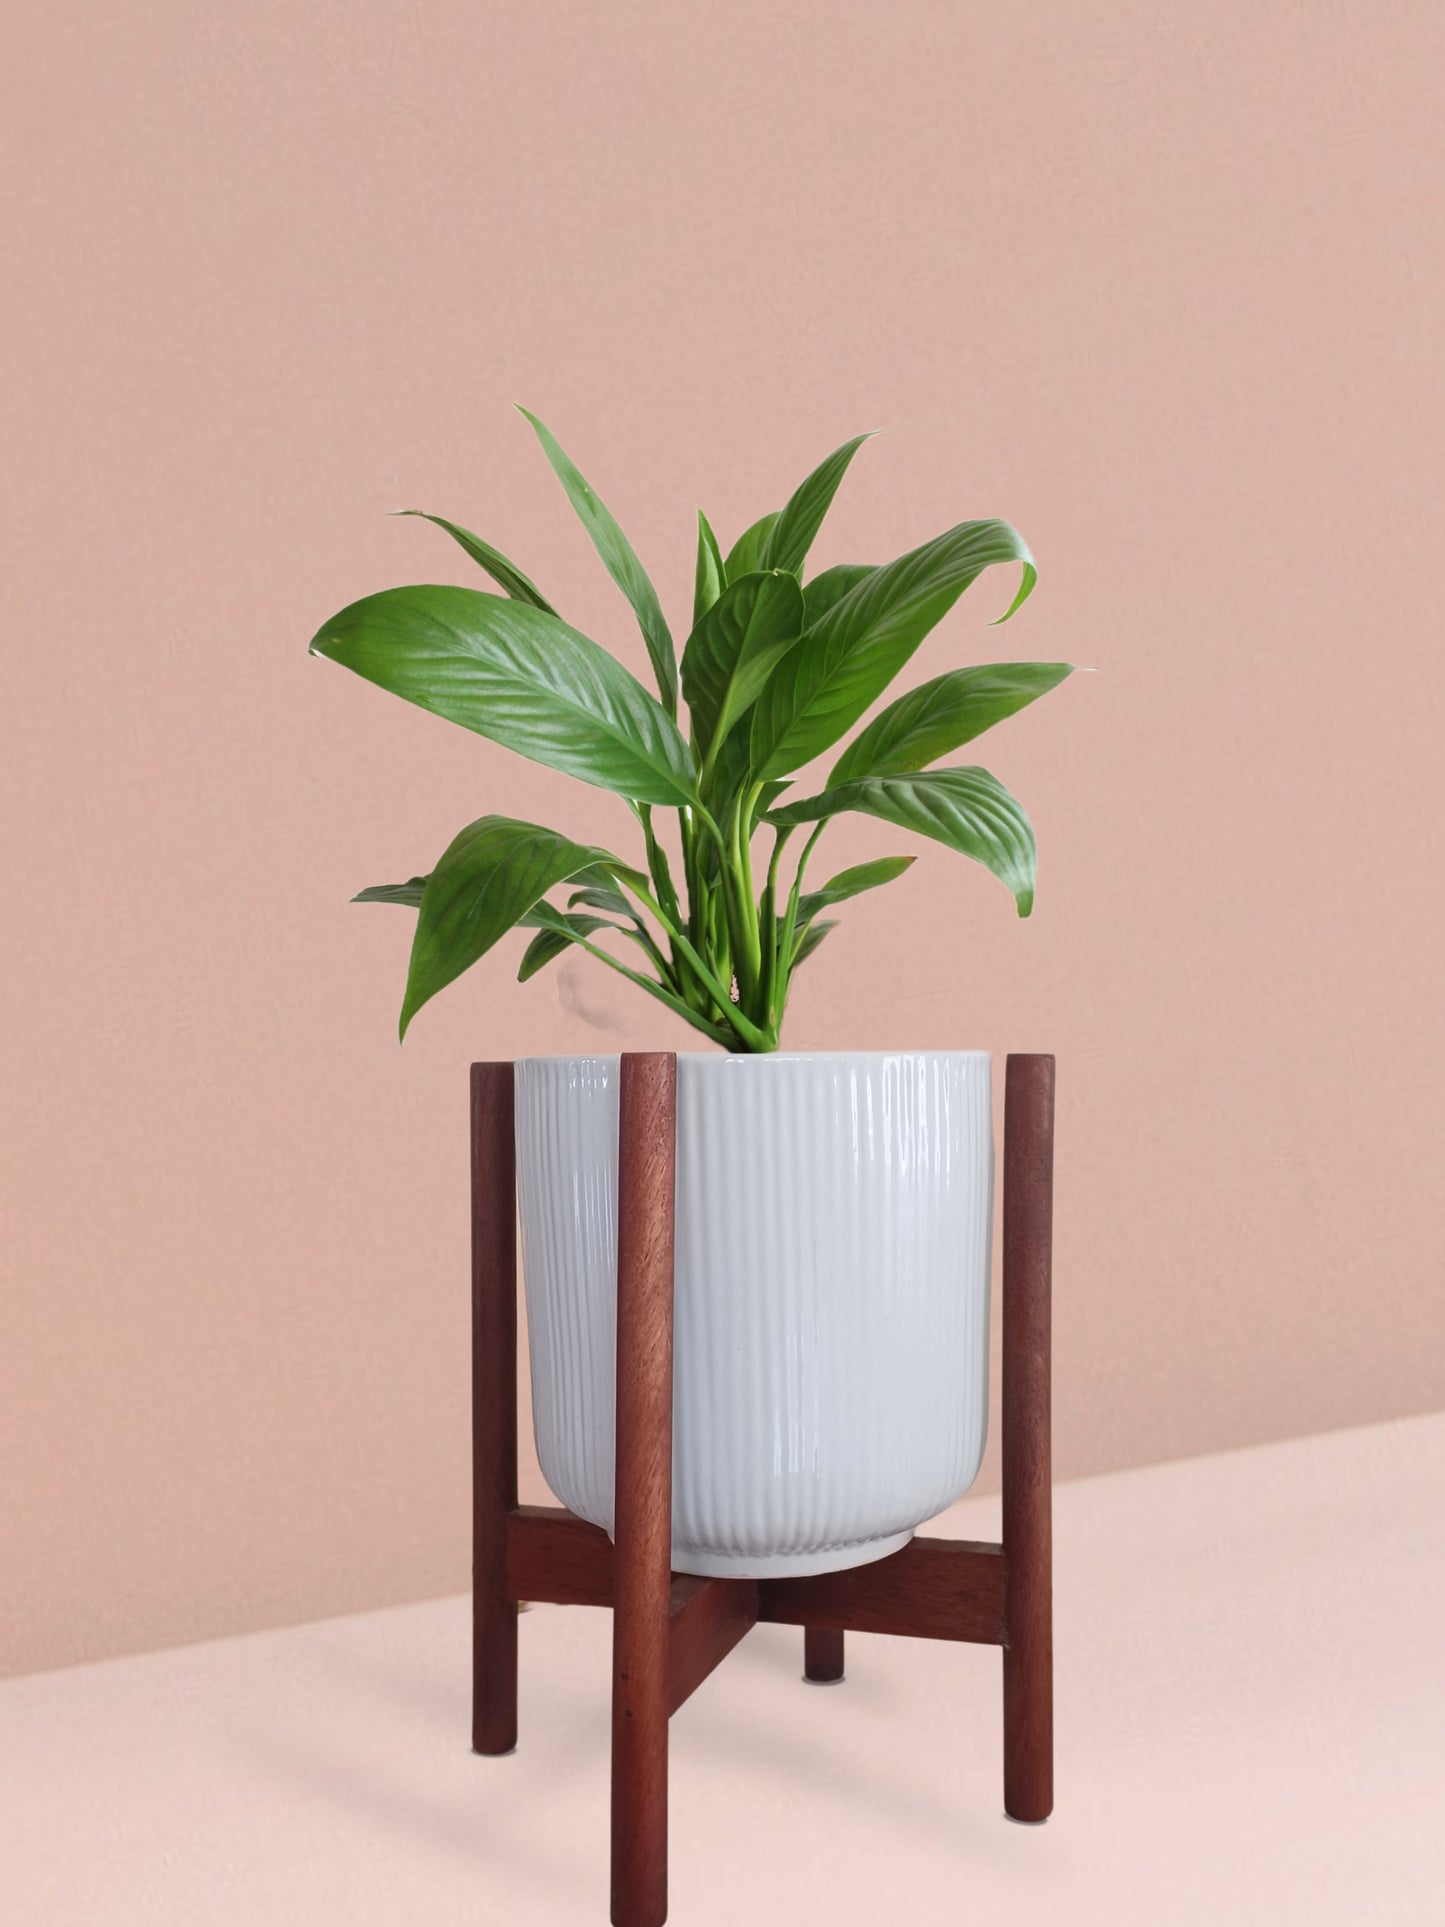 Peace Lily Plant in Ceramic Pot (Medium)